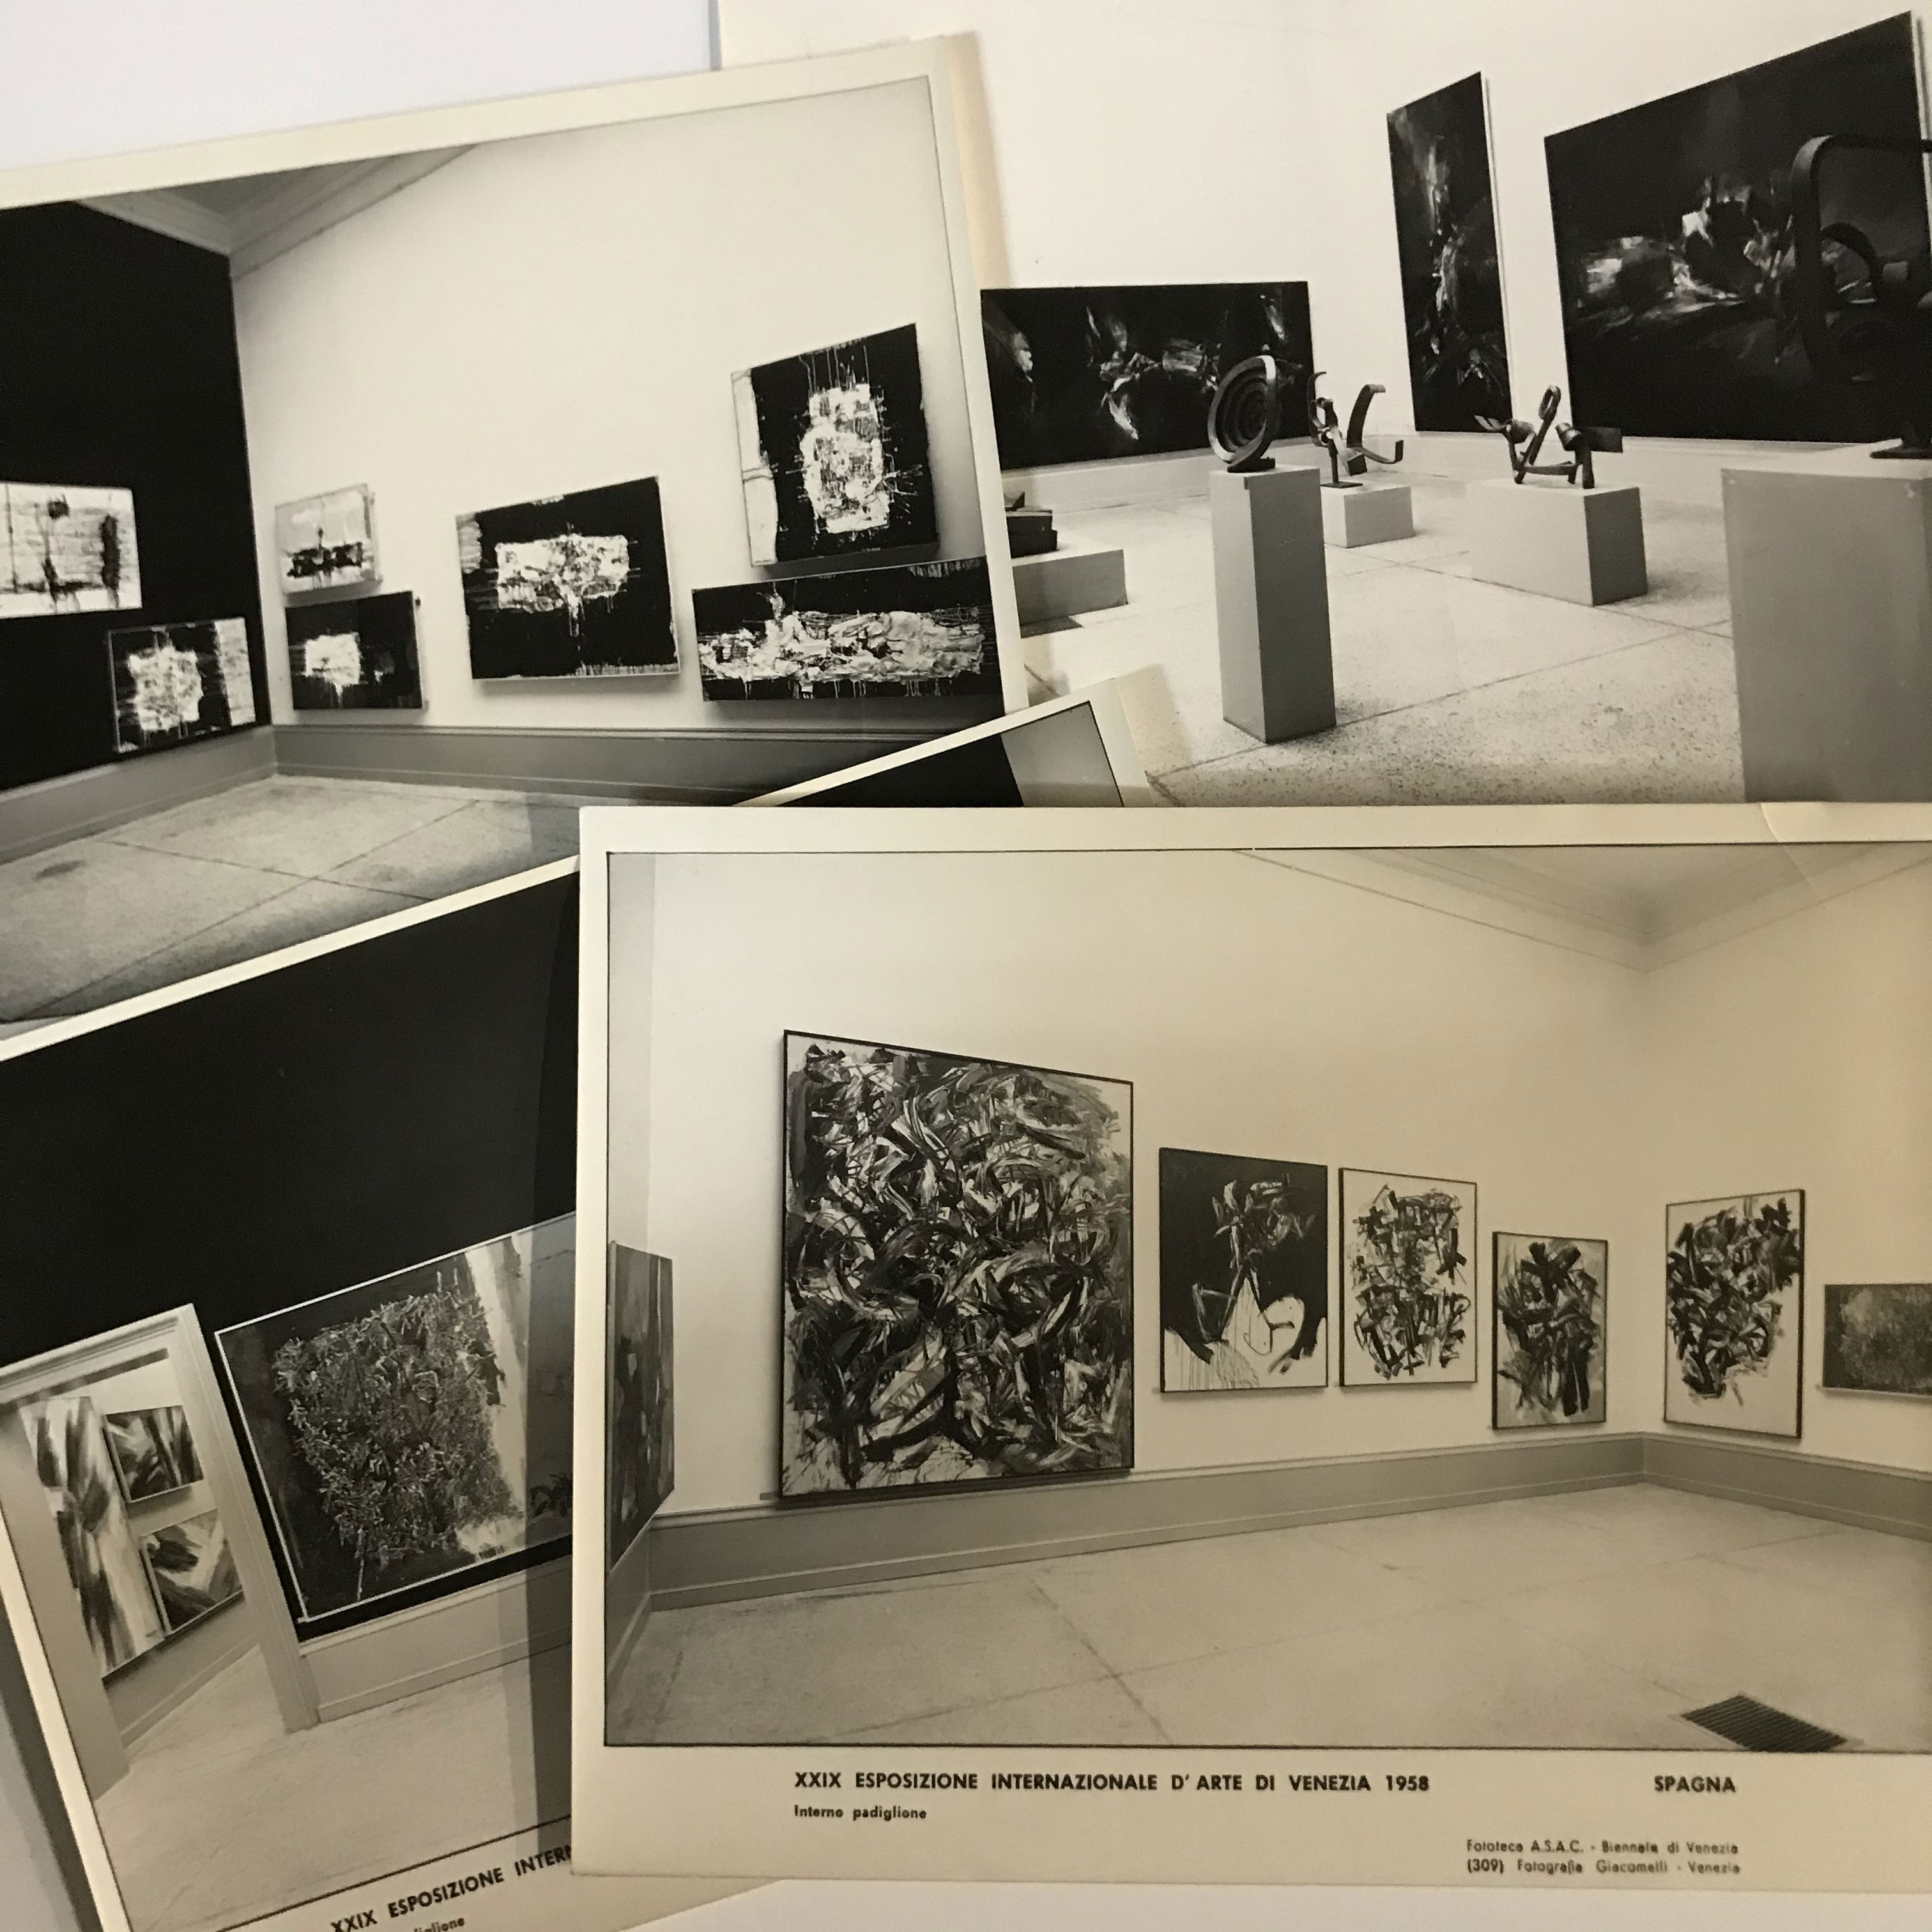 Bienal de Venecia 1958 y 1964. Aurèlia Muñoz. Martín Chirino. "UN EXPERIMENTO CON EL TIEMPO [El Fondo documental García-Ramos]". José de la Mano Galería de Arte